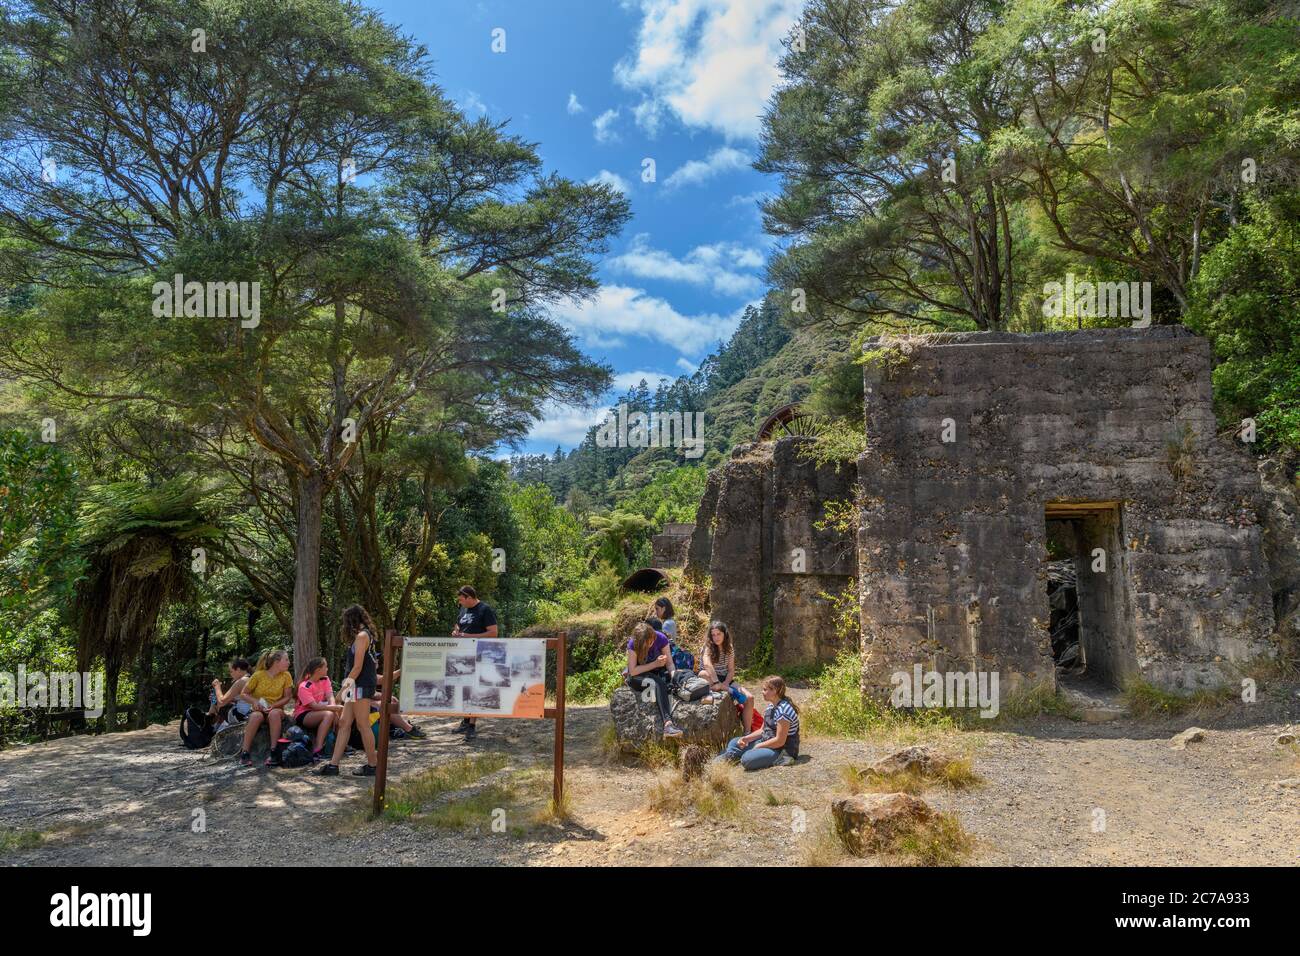 Les visiteurs qui pique-niquent à la batterie de Woodstock, la passerelle historique de la gorge de Karangahake, la gorge de Karangahake, l'île du Nord, la Nouvelle-Zélande Banque D'Images